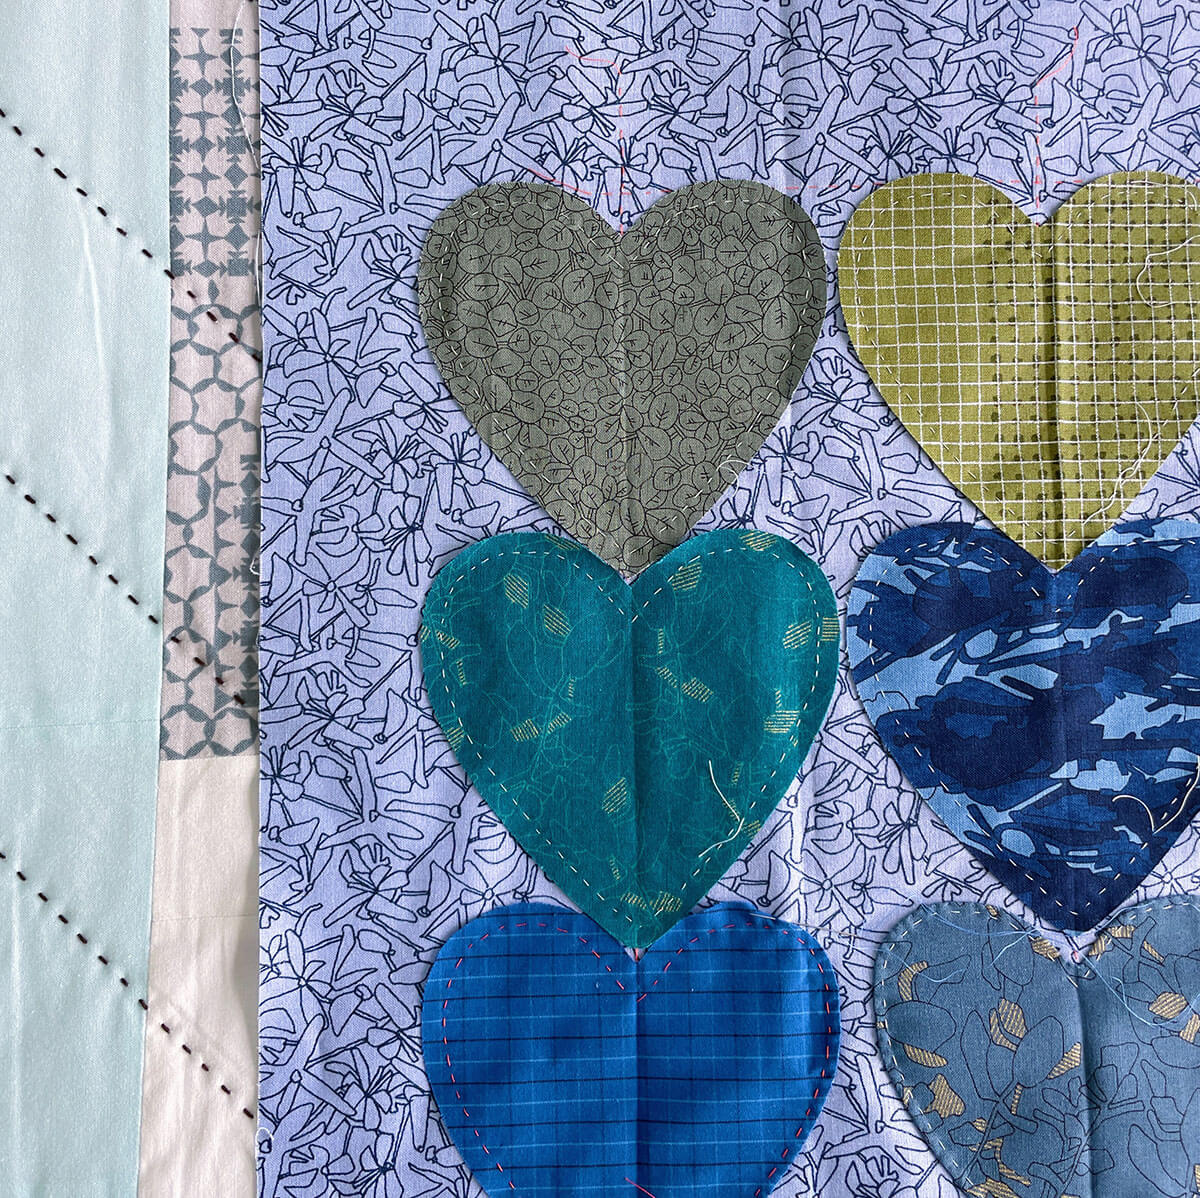 hearts appliqué block in scrappy carolyn friedlander fabrics